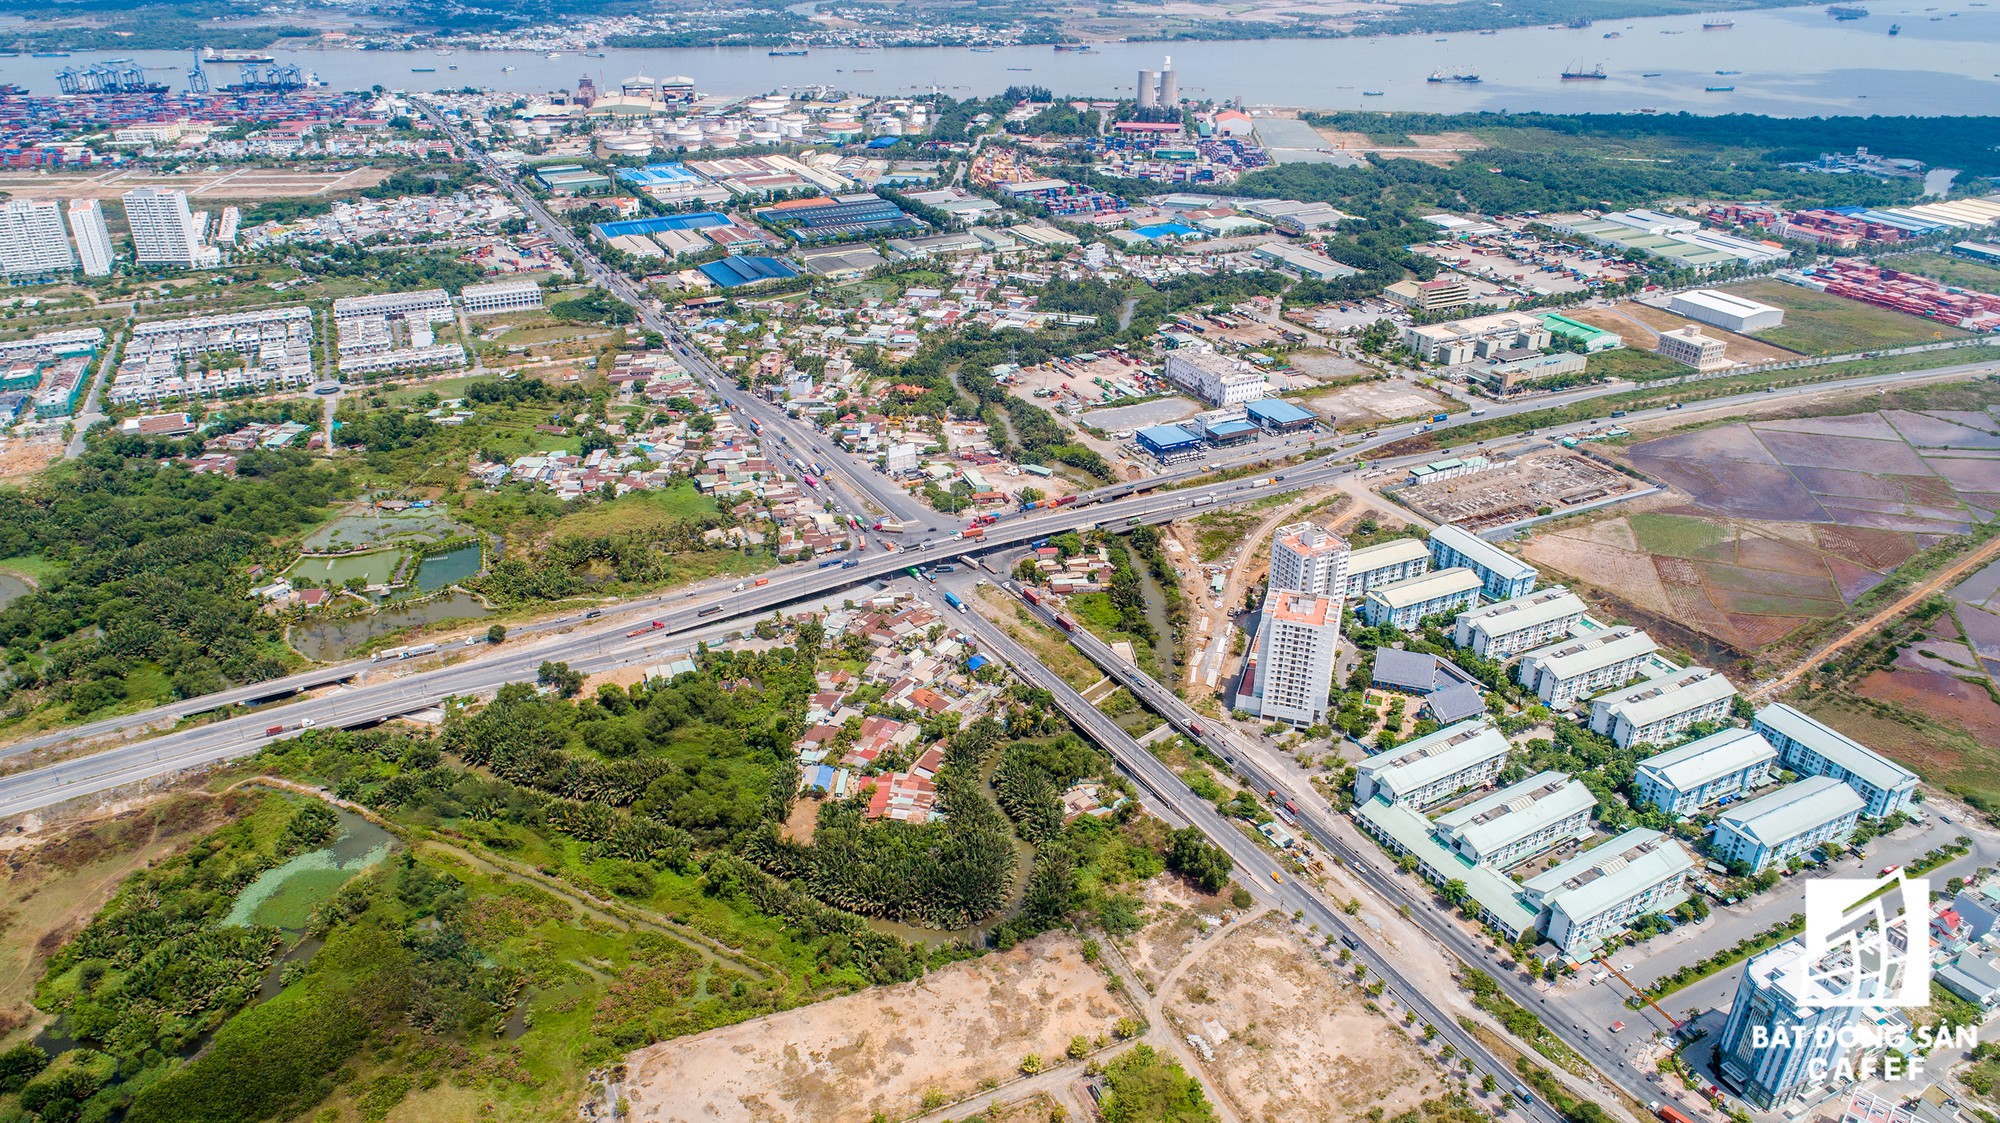 Đồng Nai chốt phương án xây cầu Cát Lái nối Nhơn Trạch và TP.HCM, bức tranh thị trường bất động sản thay đổi chóng mặt - Ảnh 17.